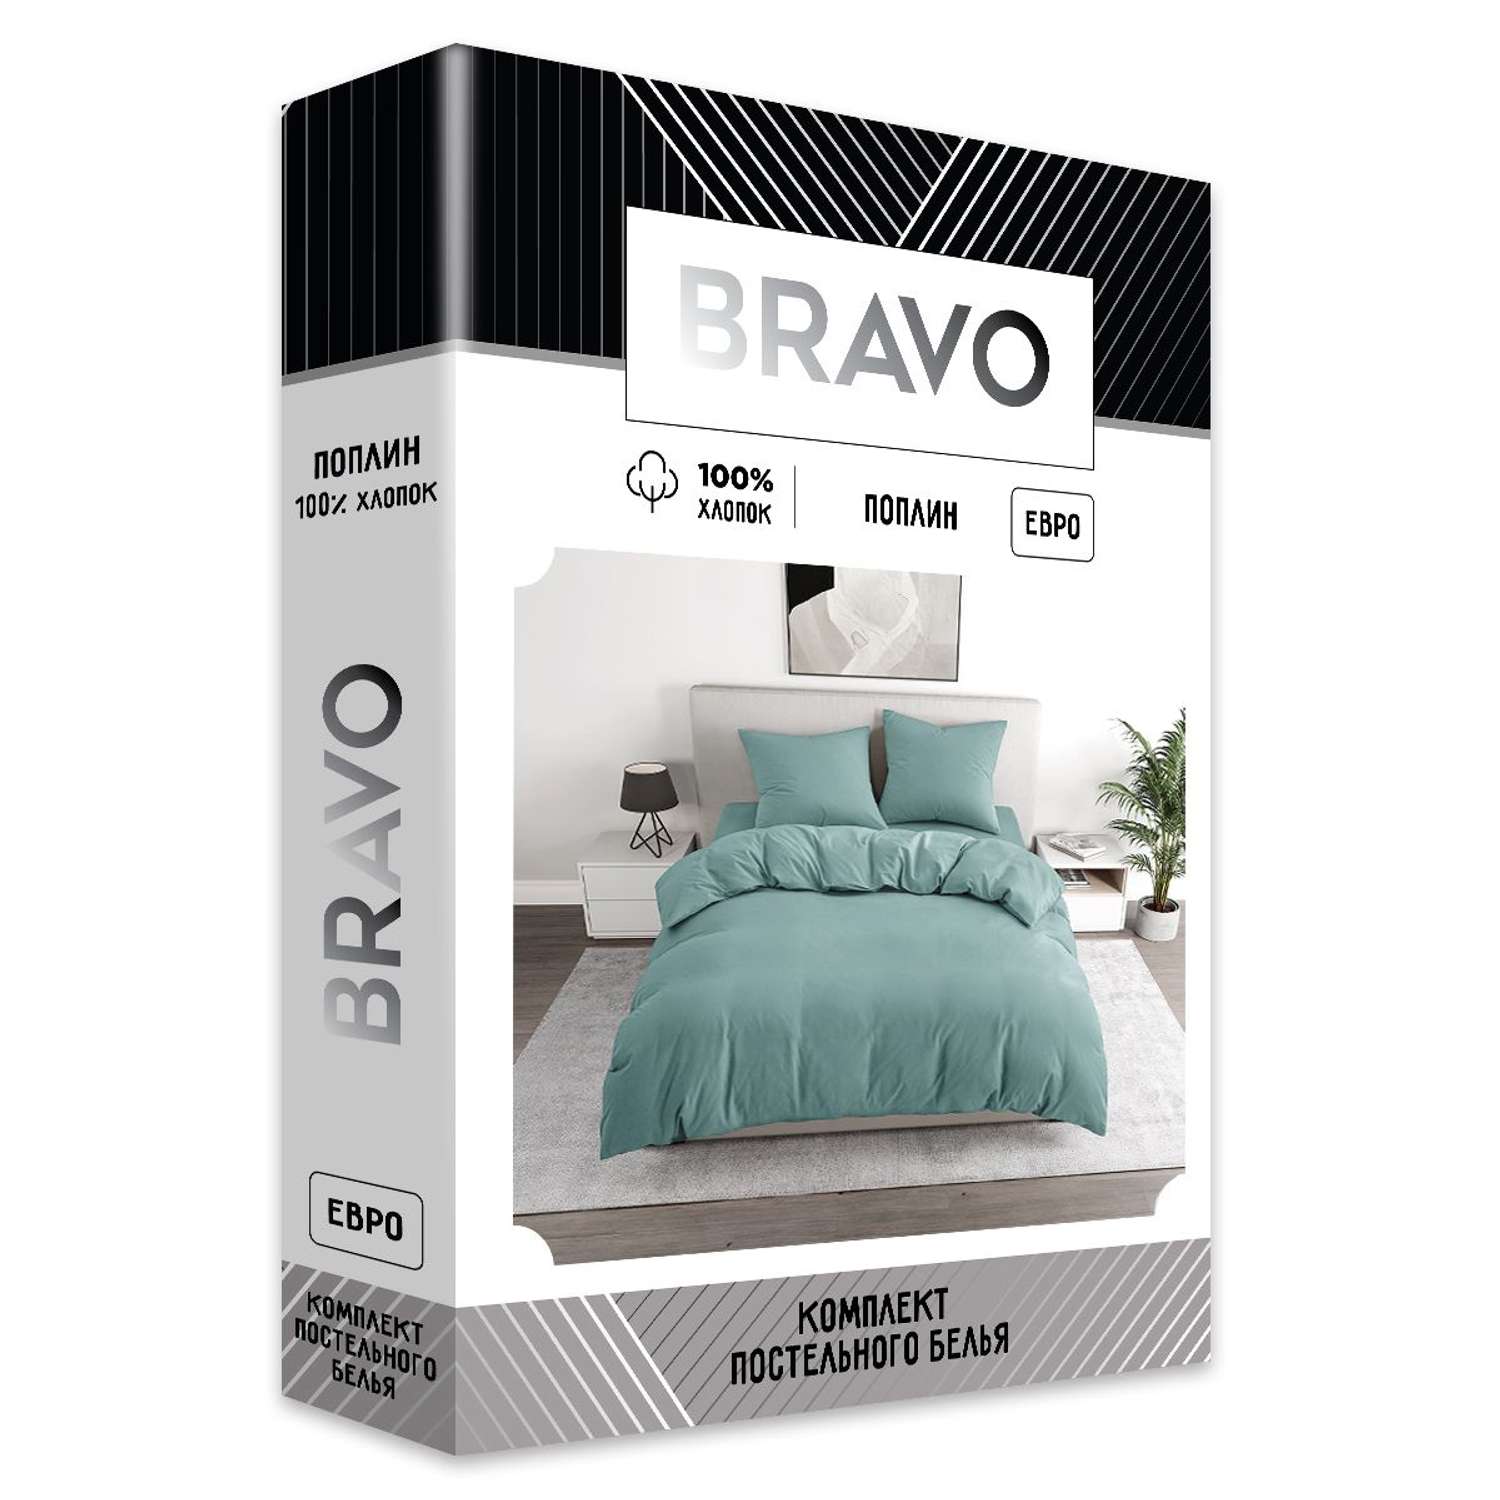 Комплект постельного белья BRAVO евро наволочки 70х70 рис.5828а-1 серый - фото 7